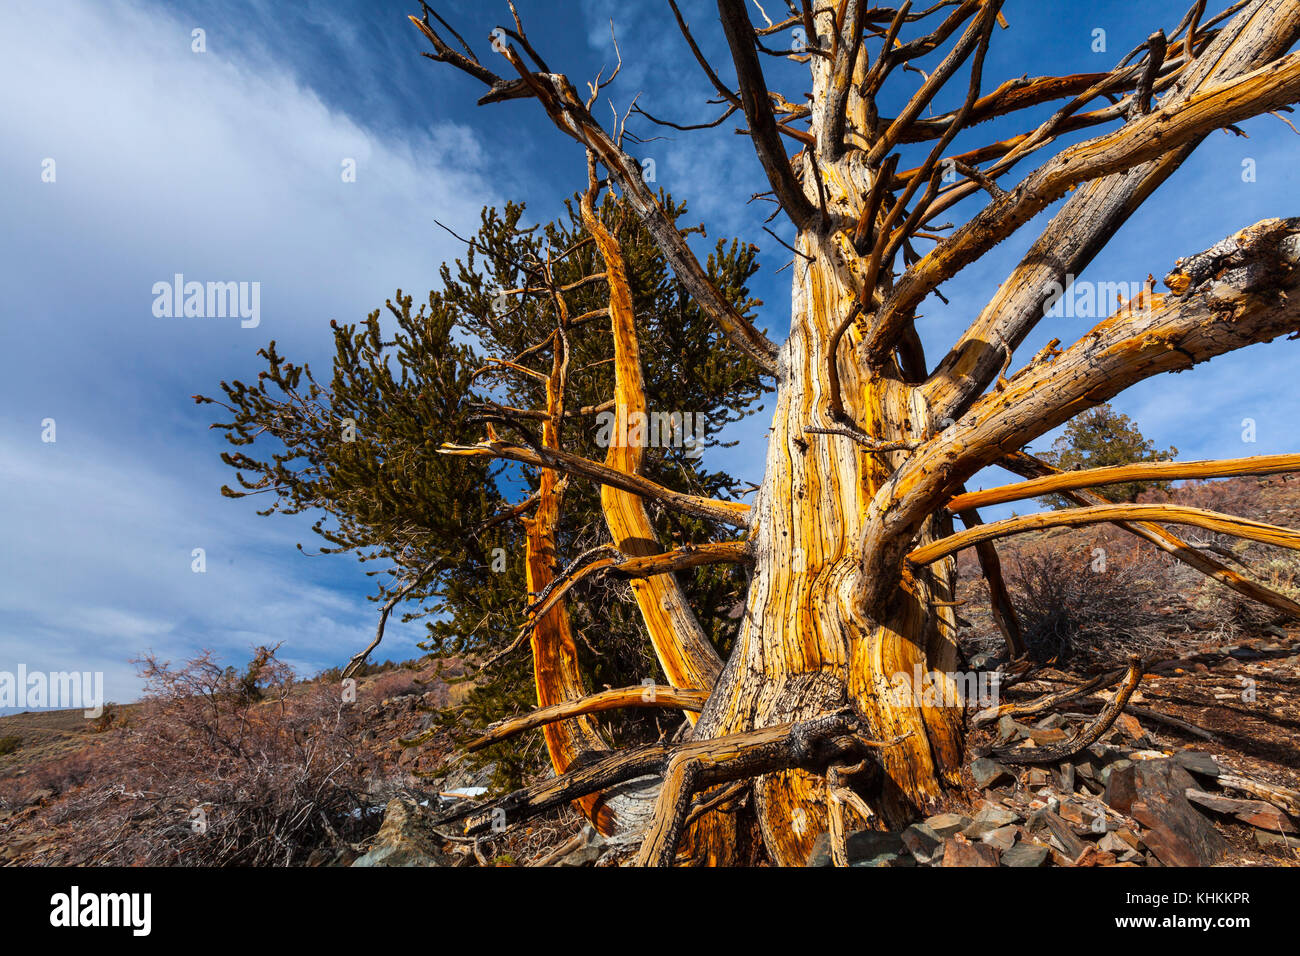 Ancient bristlecone pine forest, inyo national forest, montagnes blanches, en Californie, USA, Amérique latine Banque D'Images